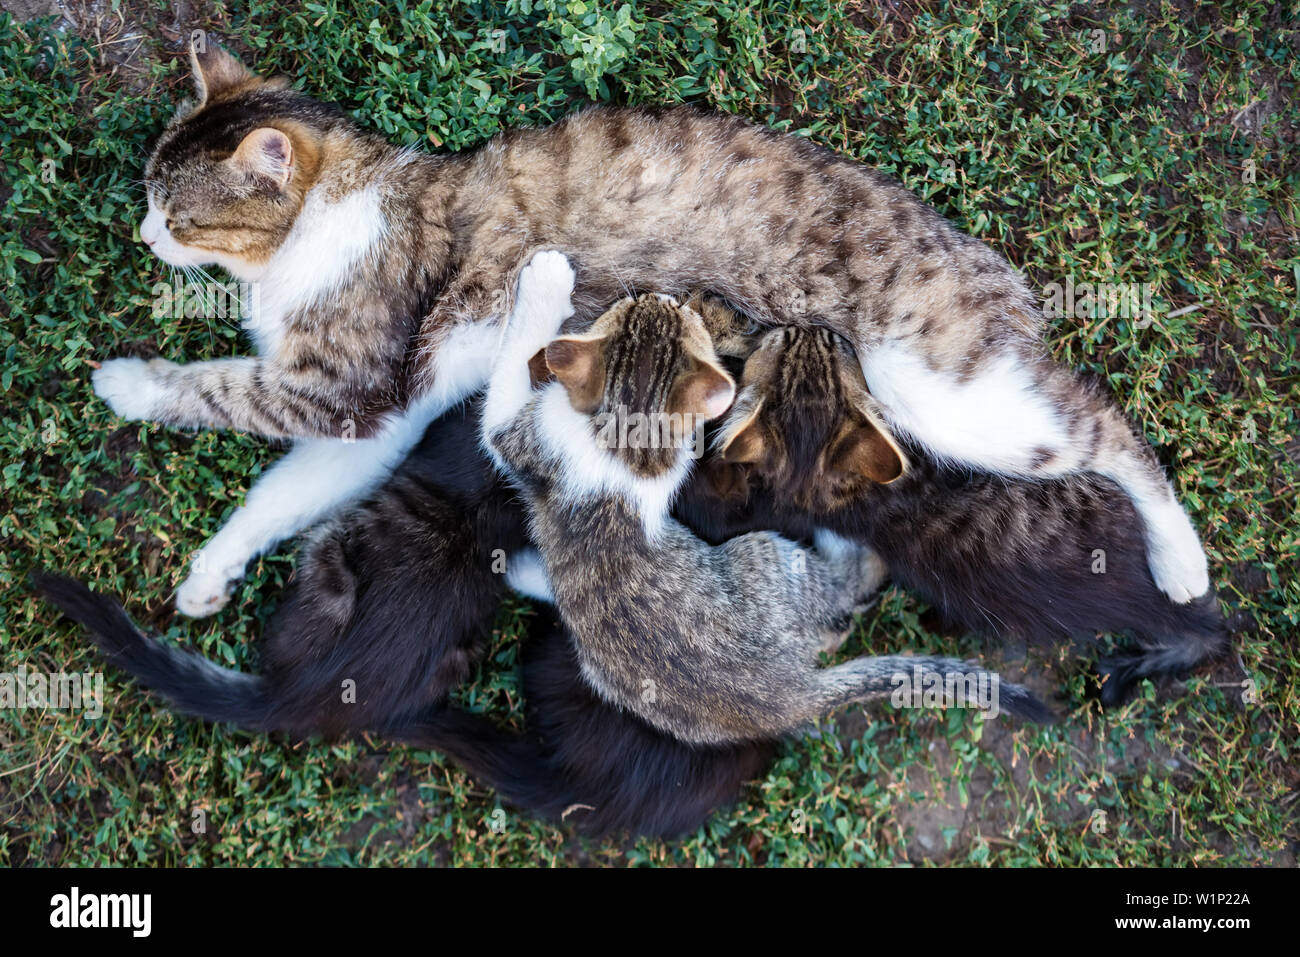 Mother cat feeding her kitten children outdoors Stock Photo